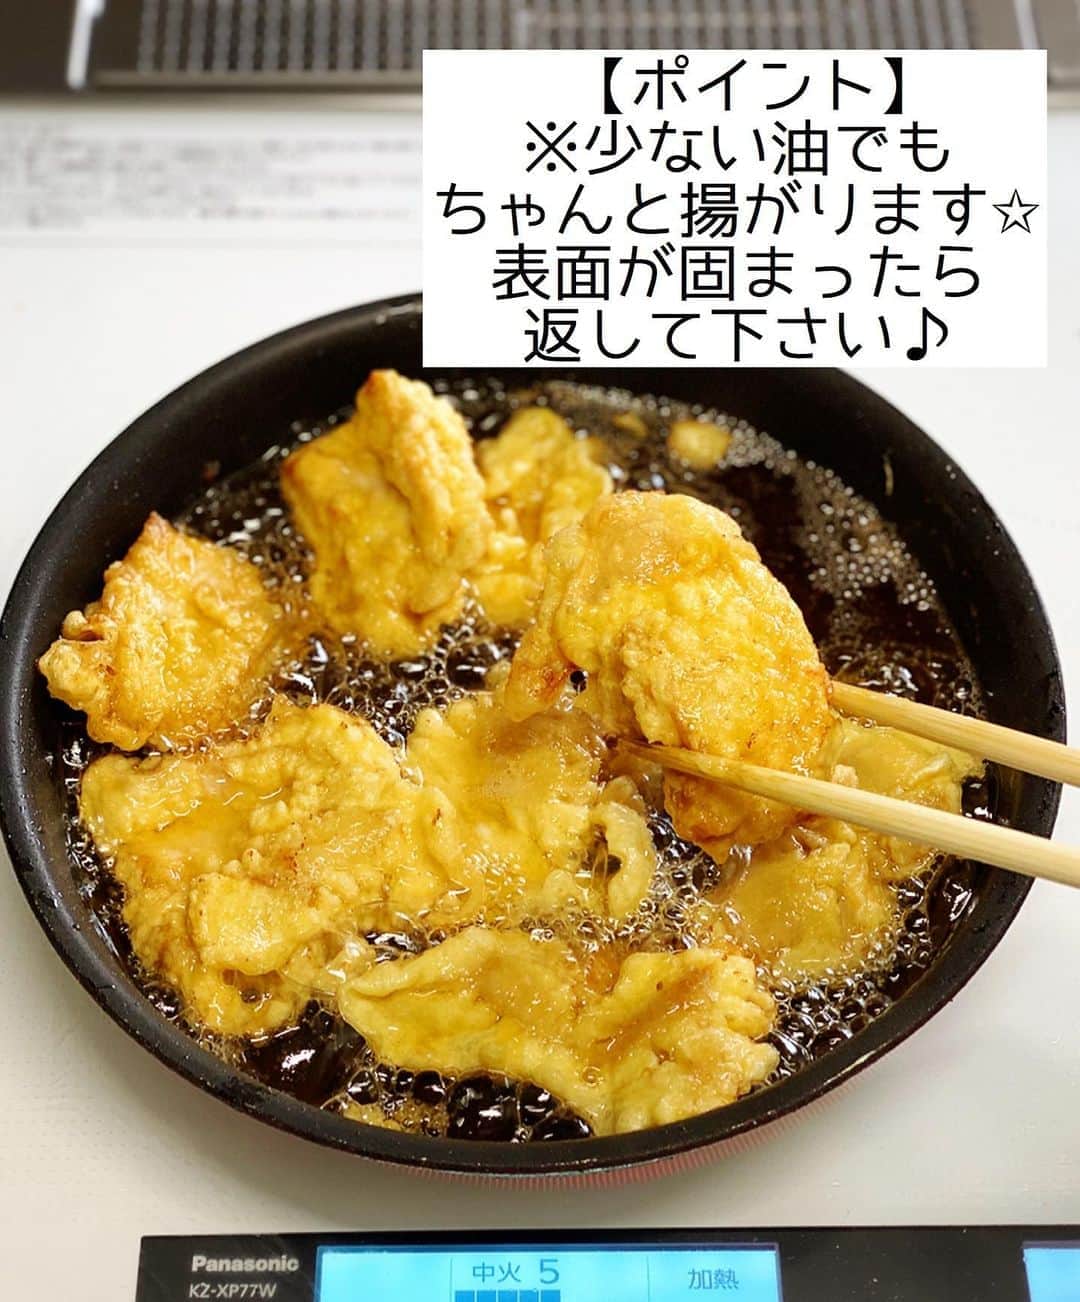 Mizuki【料理ブロガー・簡単レシピ】さんのインスタグラム写真 - (Mizuki【料理ブロガー・簡単レシピ】Instagram)「・﻿ 【レシピ】ーーーーーー﻿ ♡ささみdeとり天♡﻿ ーーーーーーーーーーー﻿ ﻿ ﻿ ﻿ おはようございます(*^^*)﻿ ﻿ 今日ご紹介させていただくのは﻿ 大分県名物［とり天］！﻿ ﻿ 今回は6年前にアップしたレシピを﻿ ささみで、漬け込み&天ぷら粉なしで、﻿ 更に揚げ焼きで作れるように﻿ ブラッシュアップしました(*´艸`)﻿ ﻿ そのままで十分味はついていますが﻿ 辛子ポン酢や天つゆにつけても﻿ 最高に美味しいですよ〜♡♡﻿ とっても簡単にできるので﻿ よかったらお試し下さいね(*^^*)﻿ ﻿ ﻿ ﻿ ーーーーーーーーーーーーーーーーーーーー﻿ 【2〜3人分】﻿ ささみ...4〜5本﻿ ●酒・醤油...各小2﻿ ●砂糖・ごま油...小1/2﻿ ●にんにく・生姜...各チューブ2cm﻿ ☆卵...1個﻿ ☆薄力粉...50g﻿ ☆冷水...大2﻿ サラダ油...適量﻿ ﻿ 1.ささみは真ん中に切り込みを入れて開き、長さを半分に切って●を揉み込む。﻿ 2.☆をざっくり混ぜ合わせて衣を作る。(ポイント参照)﻿ 3.フライパンに1cmの油を中火で熱し、1を2にからめて入れ、4〜5分揚げ焼きにする。﻿ ーーーーーーーーーーーーーーーーーーーー﻿ ﻿ ﻿ ﻿ 《ポイント》﻿ ♦︎衣の材料は混ぜ過ぎず、粉っぽさが残るくらいにざっくり混ぜればOK♩﻿ ♦︎衣はなるべくたっぷりつけて下さい♩﻿ ♦︎ささみの代わりに一口大に切ったむね肉で作っても♩﻿ ﻿ ﻿ ﻿ ﻿ ﻿ ﻿ ﻿ ＿＿＿＿＿＿＿＿＿＿＿＿＿＿＿＿＿＿＿﻿ 📕6刷重版しました📕﻿ 簡単・時短！ 毎日のごはんがラクになる﻿ ✨🦋 【 #Mizukiの今どき和食 】🦋✨﻿ ＿＿＿＿＿＿＿＿＿＿＿＿＿＿＿＿＿＿＿﻿ なるべく少ない材料で﻿ 手間も時間も省きながら﻿ 簡単にできるおいしい和食レシピ♩﻿ 簡単に失敗なくマスターできる一冊で﻿ もっと気軽に、カジュアルに﻿ 和食を楽しんで下さいね(*^^*)﻿ ＿＿＿＿＿＿＿＿＿＿＿＿＿＿＿＿＿＿＿﻿ ﻿ ﻿ ﻿ ＿＿＿＿＿＿＿＿＿＿＿＿＿＿＿＿＿＿＿﻿ 🎀6刷重版しました🎀﻿ 混ぜて焼くだけ。はじめてでも失敗しない！﻿ 【#ホットケーキミックスのお菓子 】﻿ ﻿ 一冊まるっとホケミスイーツ♩﻿ 普段のおやつから﻿ 特別な日にも使えるレシピを﻿ この一冊に詰め込みました(*^^*)﻿ ホットケーキミックスを使えば﻿ 簡単に本格的なお菓子が作れますよ♡﻿ ＿＿＿＿＿＿＿＿＿＿＿＿＿＿＿＿＿﻿ ﻿ ﻿ ﻿ ﻿ ￣￣￣￣￣￣￣￣￣￣￣￣￣￣￣￣￣￣﻿ レシピを作って下さった際や﻿ レシピ本についてのご投稿には﻿ タグ付け( @mizuki_31cafe )して﻿ お知らせいただけると嬉しいです😊💕﻿ ＿＿＿＿＿＿＿＿＿＿＿＿＿＿＿＿＿＿﻿ ﻿ ﻿ ﻿ ﻿ ﻿ #ささみ#とり天#天ぷら#ヘルシー#揚げない#コスパ#Mizuki#簡単レシピ#時短レシピ#節約レシピ#料理#レシピ#フーディーテーブル#マカロニメイト#おうちごはん#デリスタグラマー#料理好きな人と繋がりたい#食べ物#料理記録#おうちごはんlover#写真好きな人と繋がりたい#foodpic#cooking#recipe#lin_stagrammer#foodporn#yummy#とり天m」8月14日 7時12分 - mizuki_31cafe